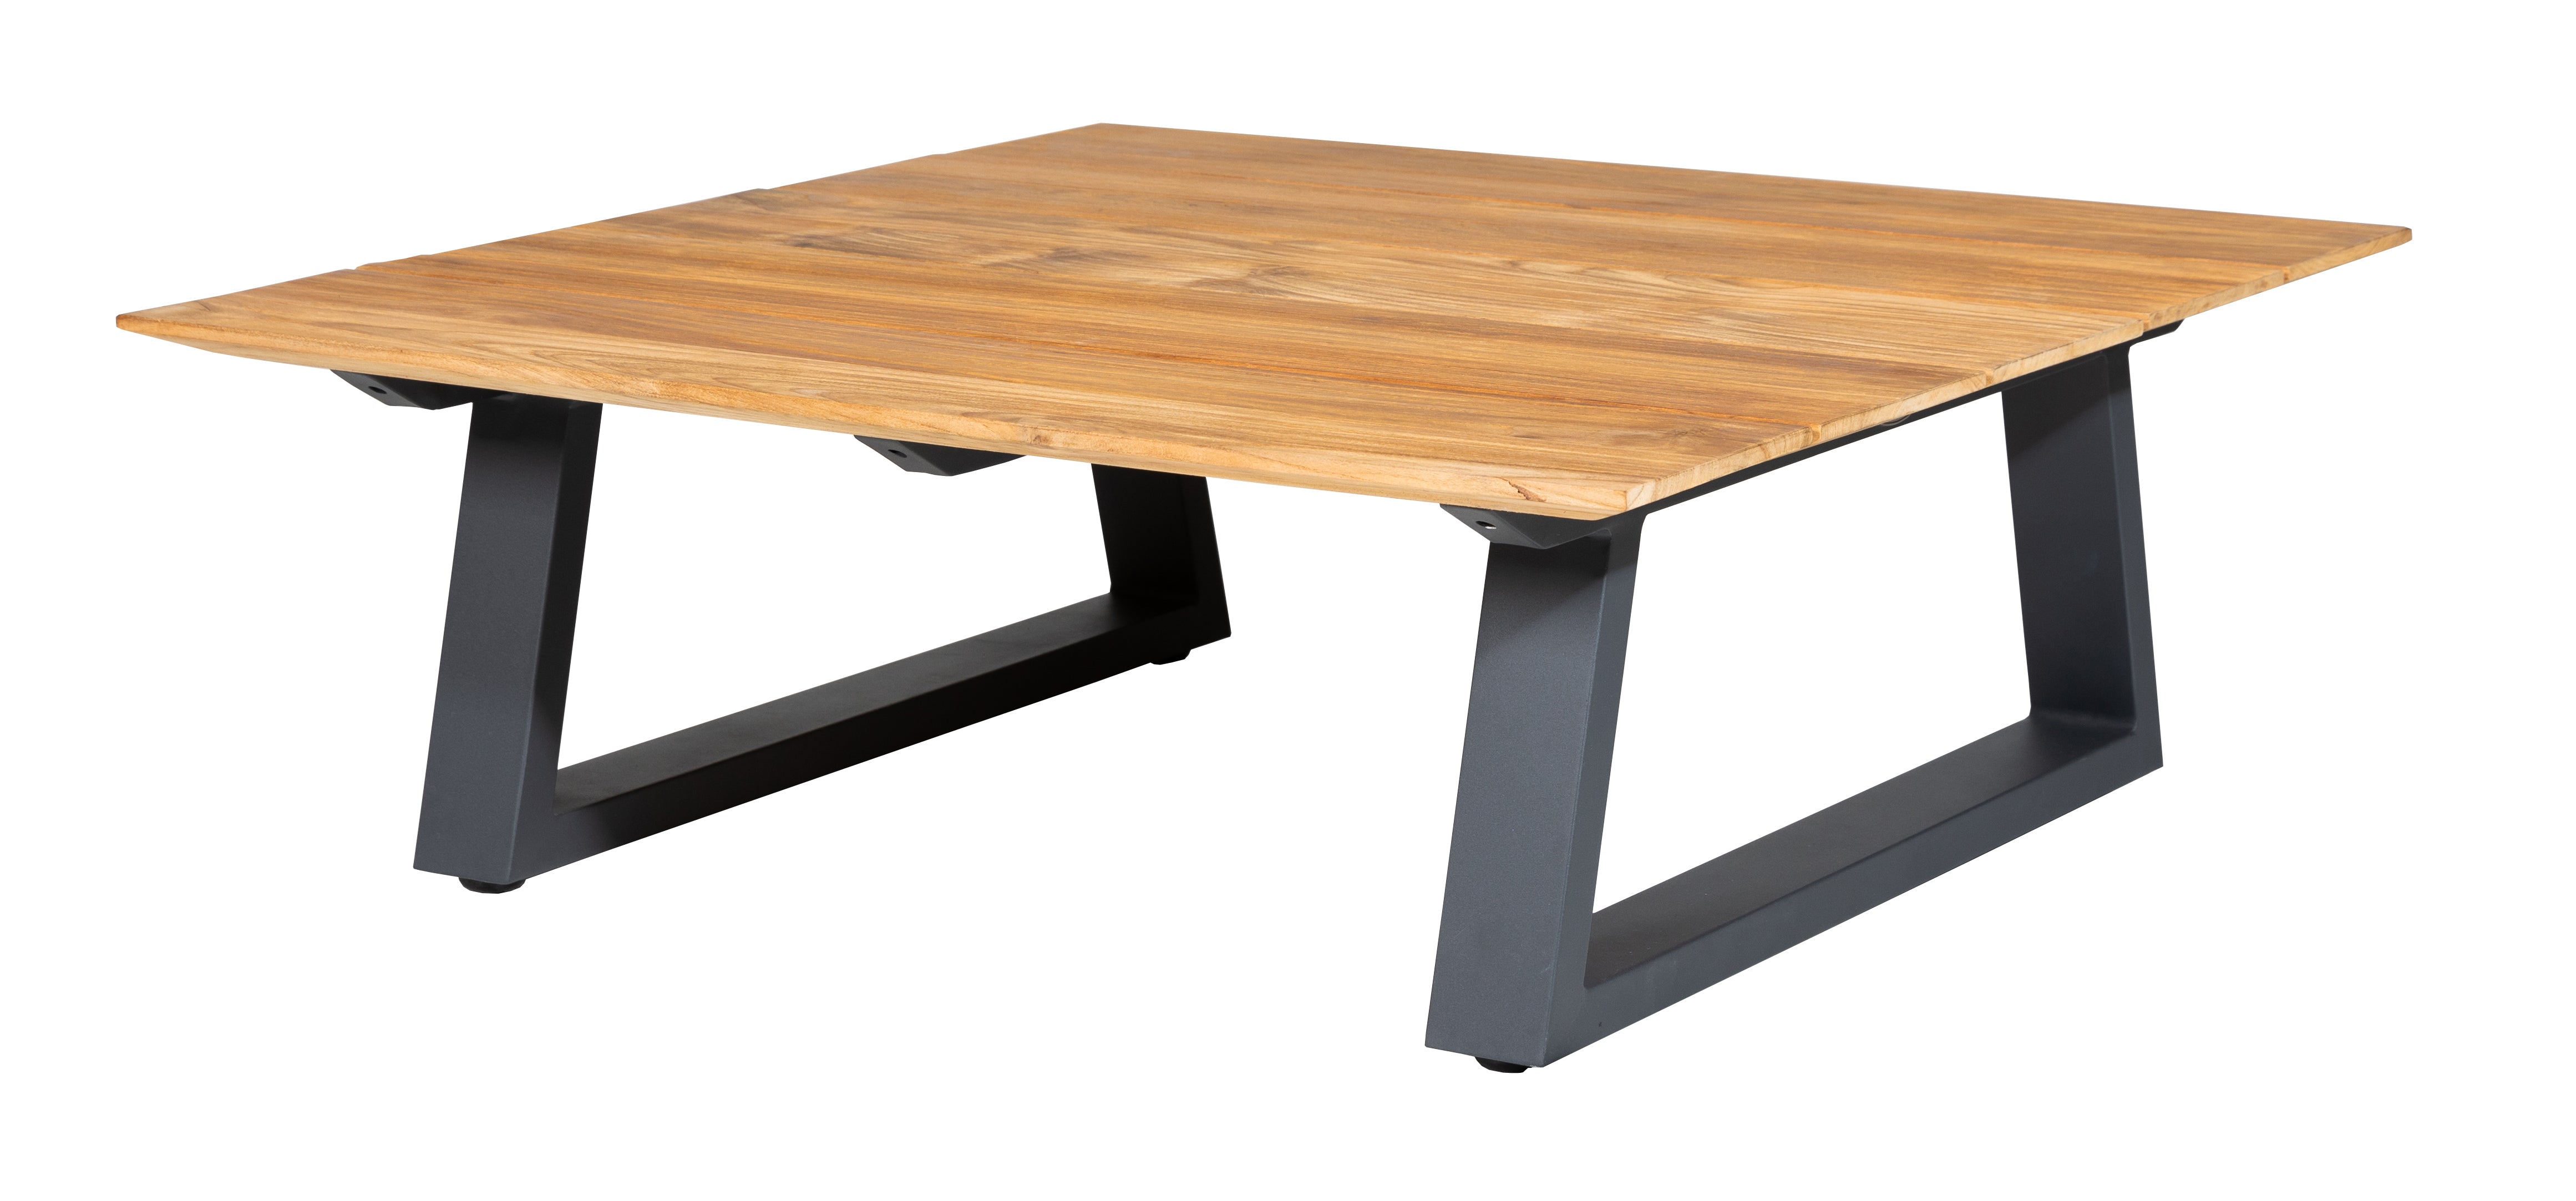 Quadratischer Lounge Tisch mit hochwertigem pulverbeschichtetem Aluminiumrahmen kombiniert mit recyceltem, altem Teakholz mit 5 breiten Lamellen in 25 mm Stärke und umlaufender Fase an der Tischunterkante. Beine mit Schraubfüßen für Niveauausgleich.